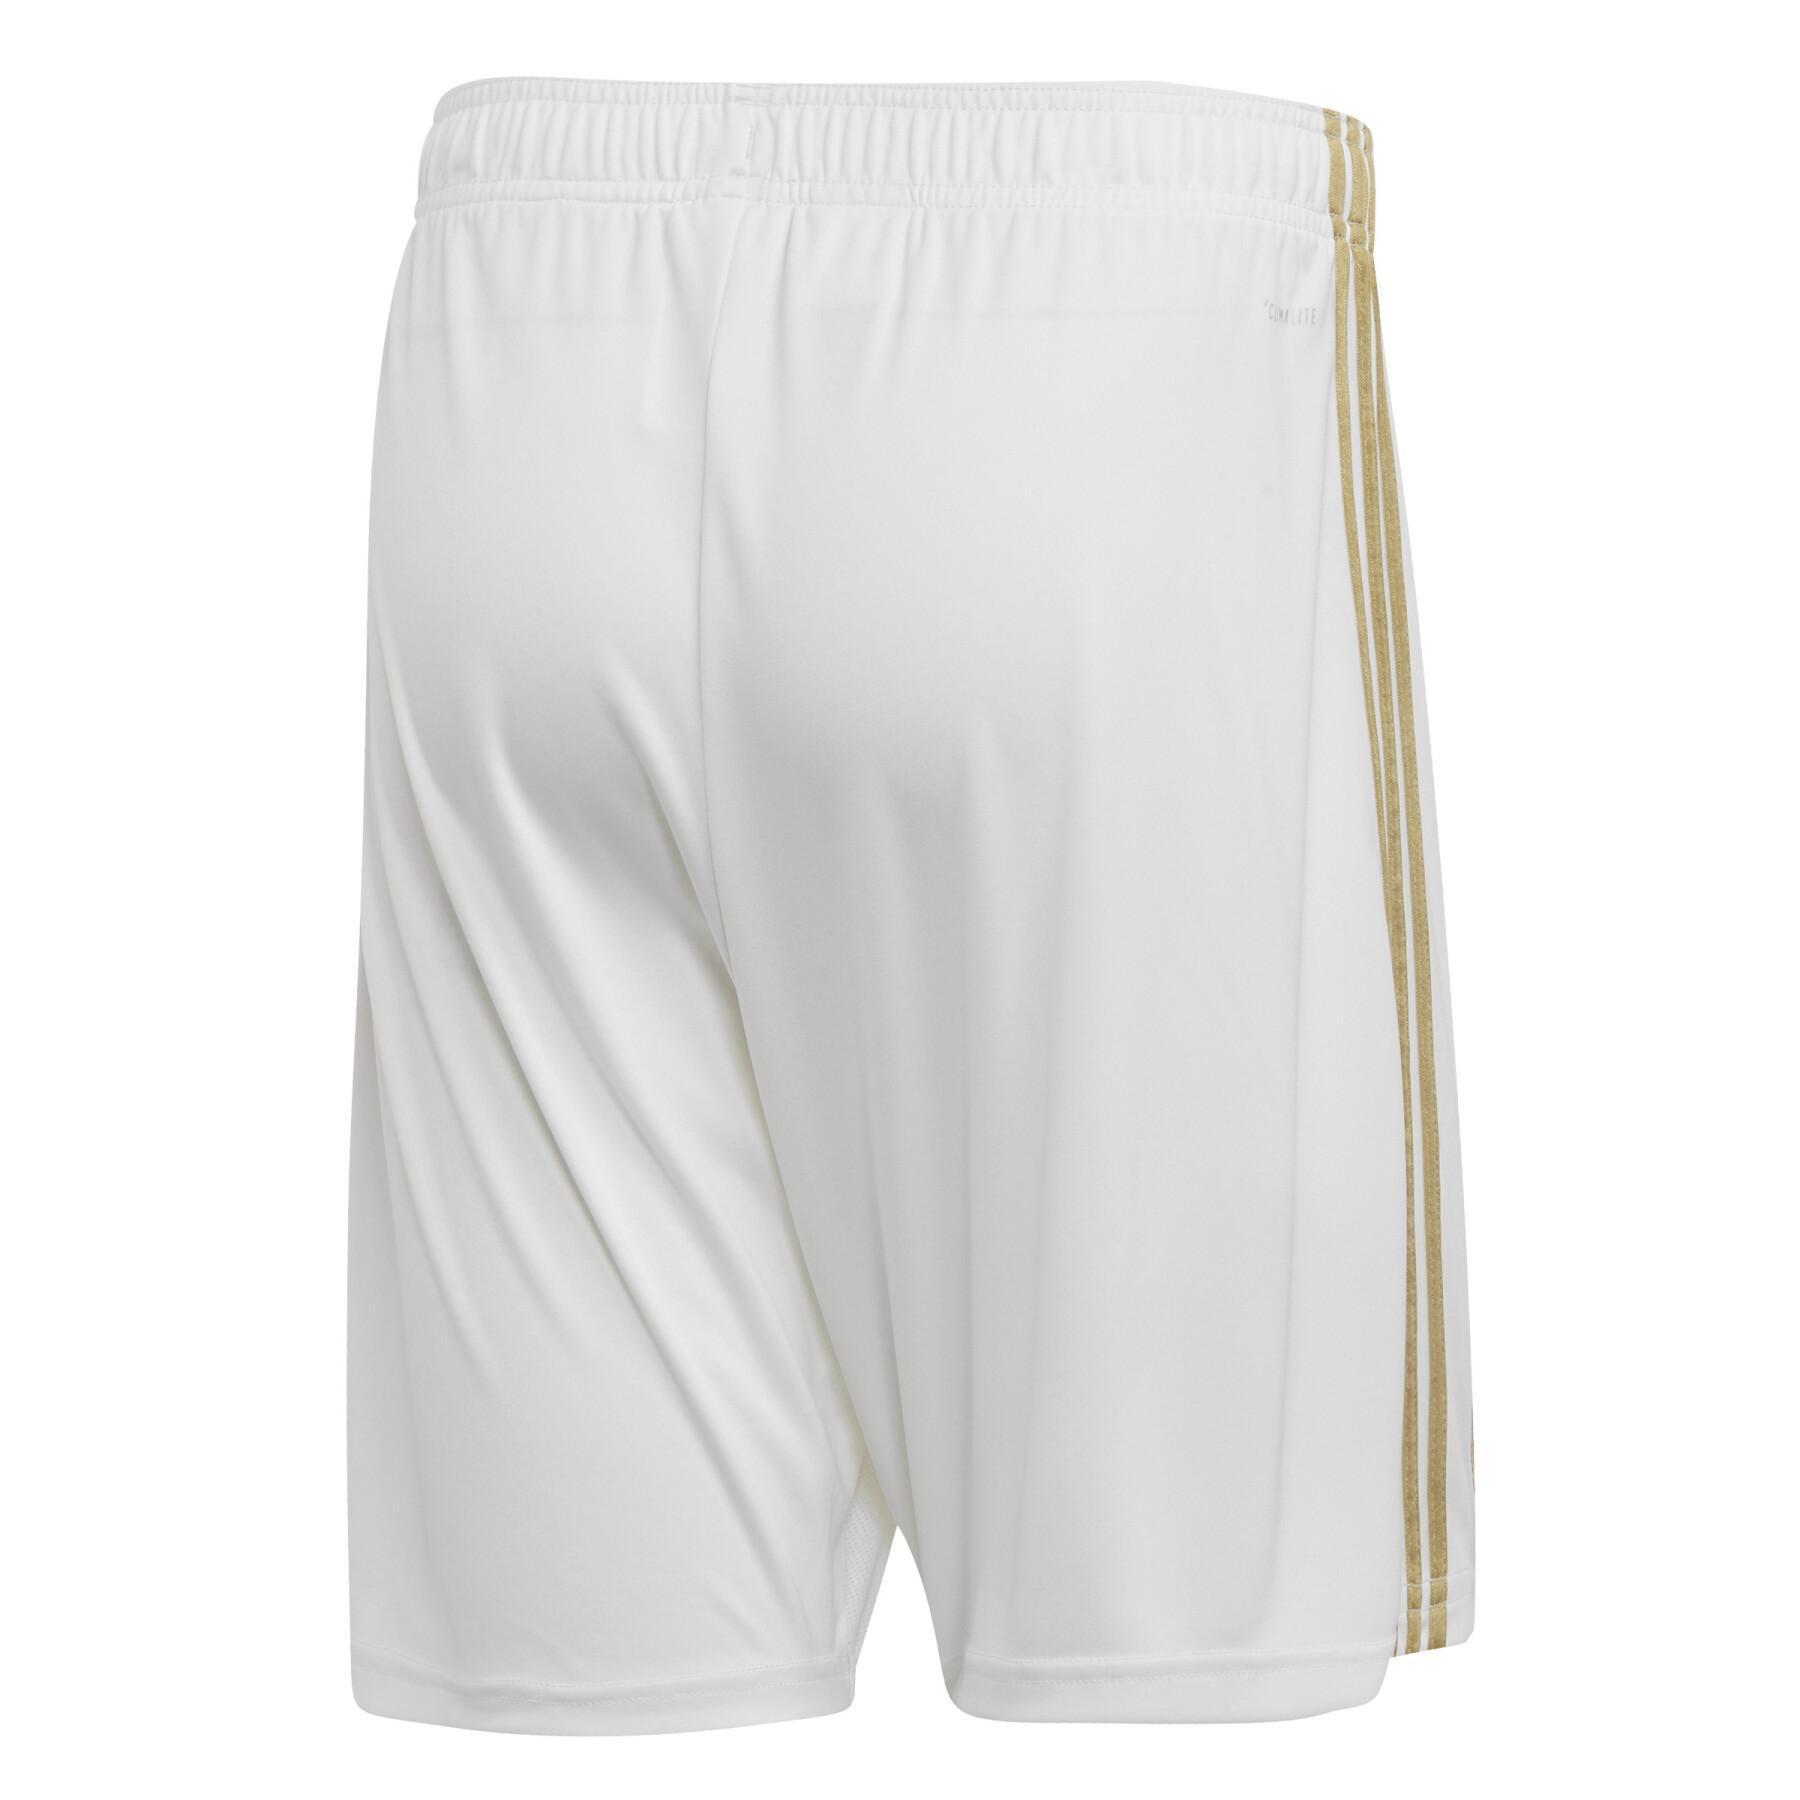 Pantalones cortos para el hogar Real Madrid 2019/20